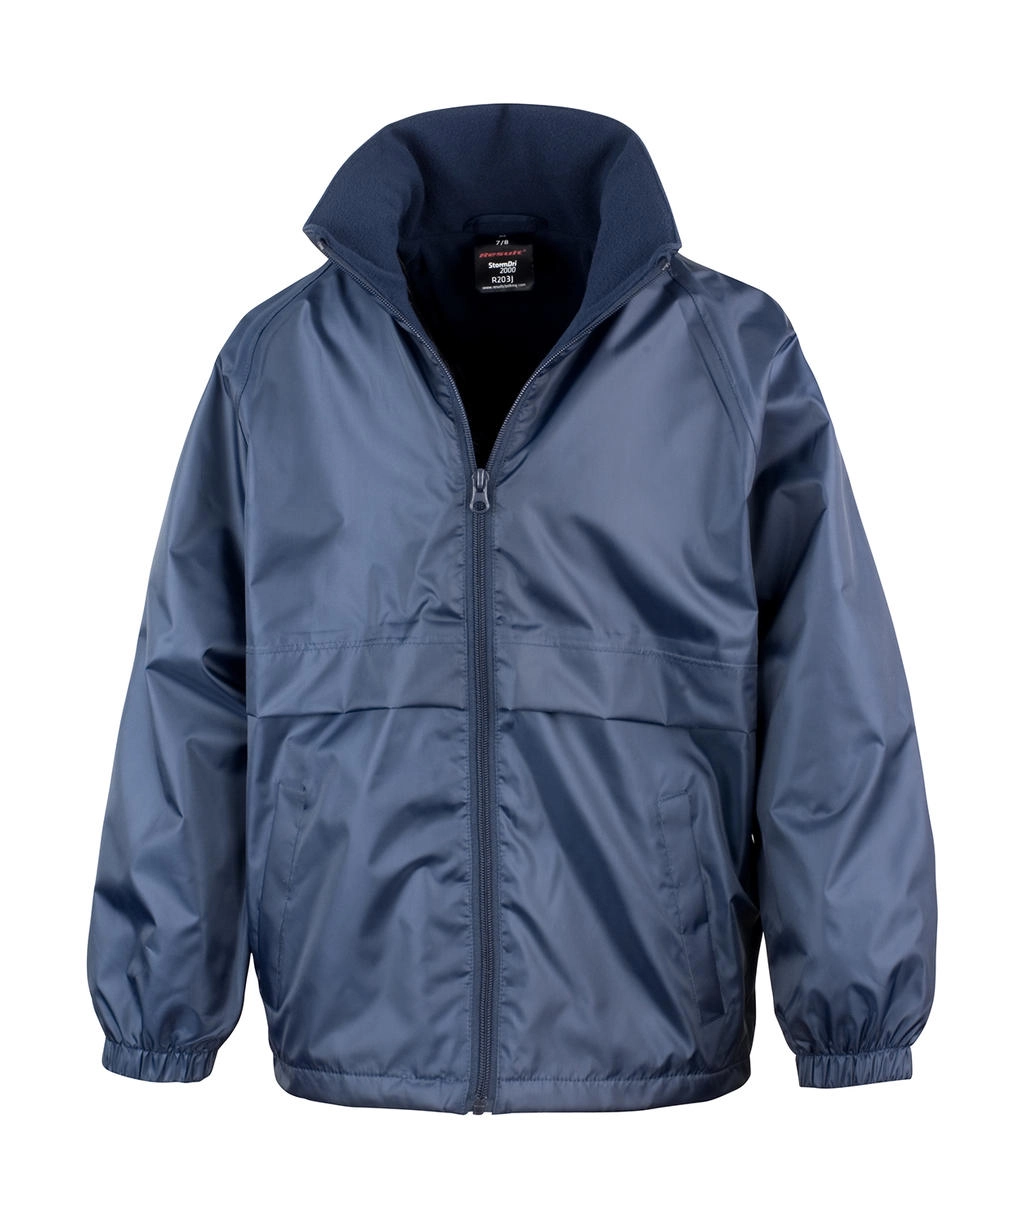 CORE Junior Microfleece Lined Jacket zum Besticken und Bedrucken in der Farbe Navy mit Ihren Logo, Schriftzug oder Motiv.